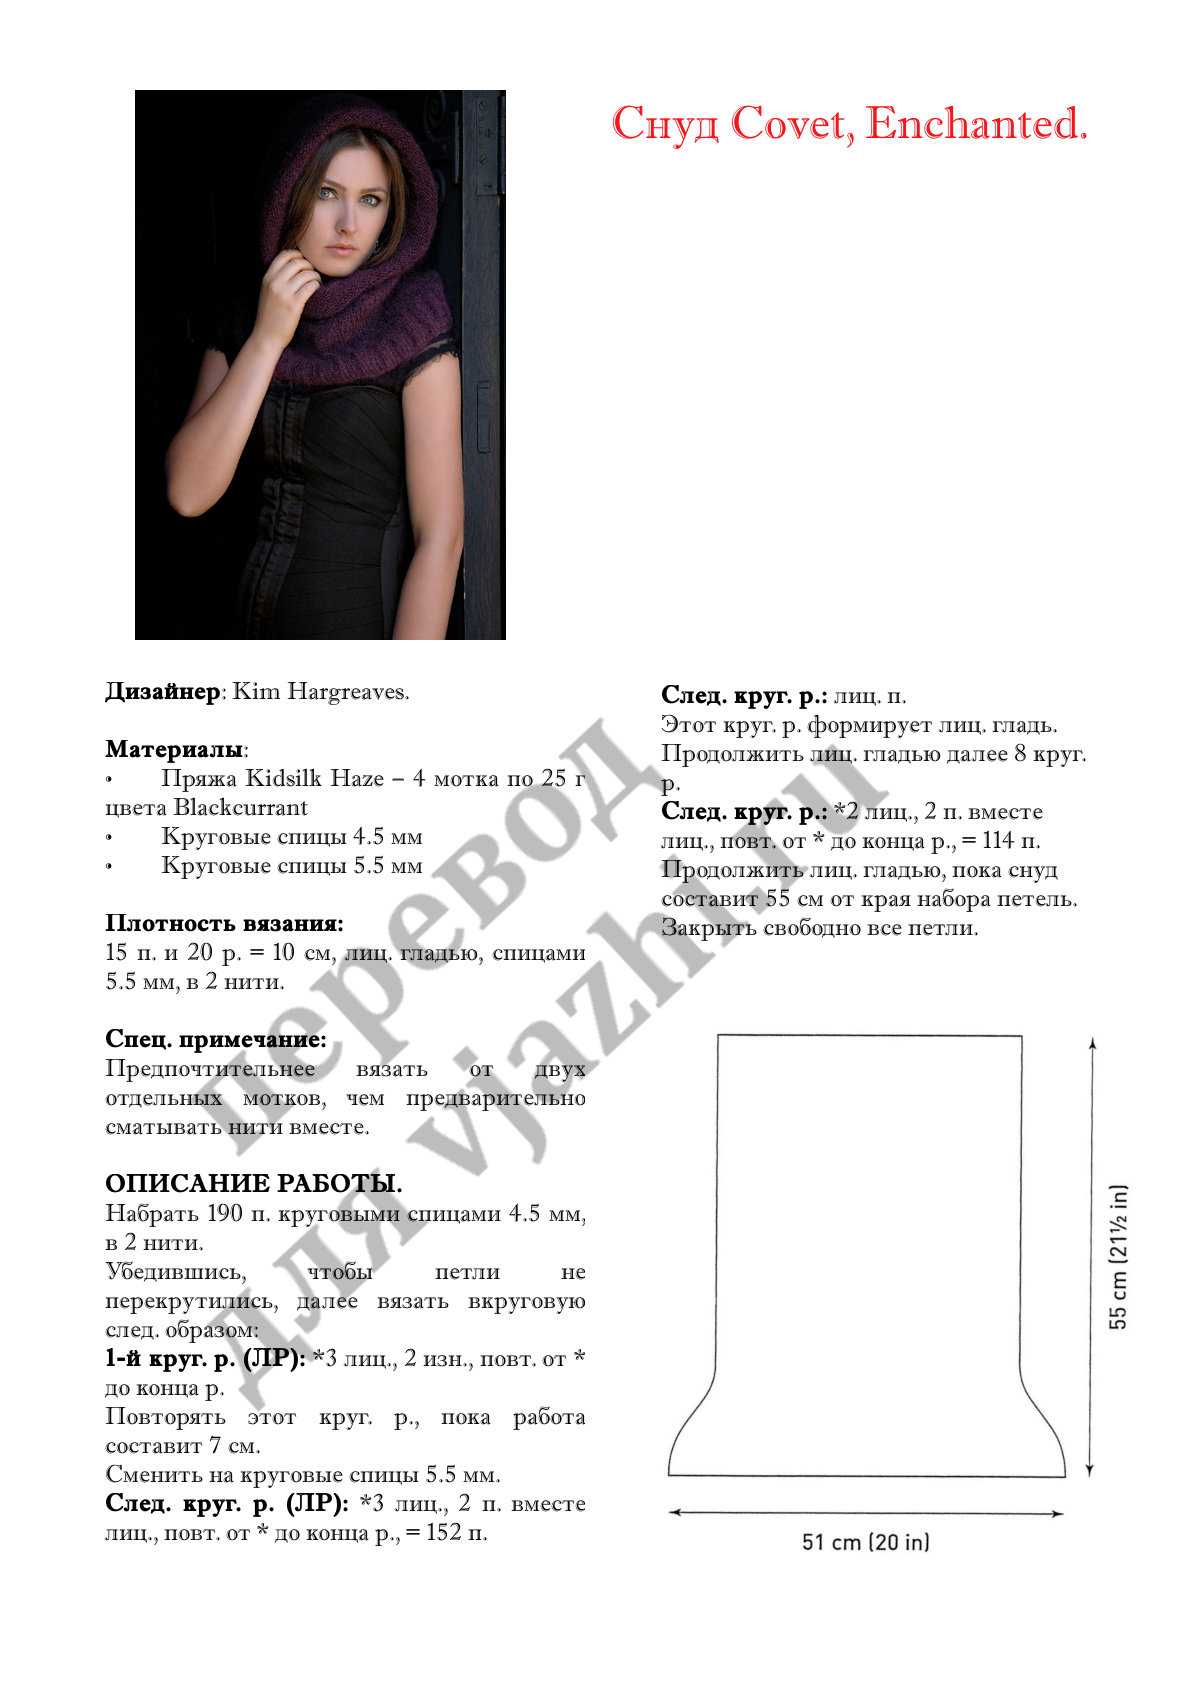 Вязание спицами из мохера для женщин спицами - подробное описание схем вязания, фото идеи, советы